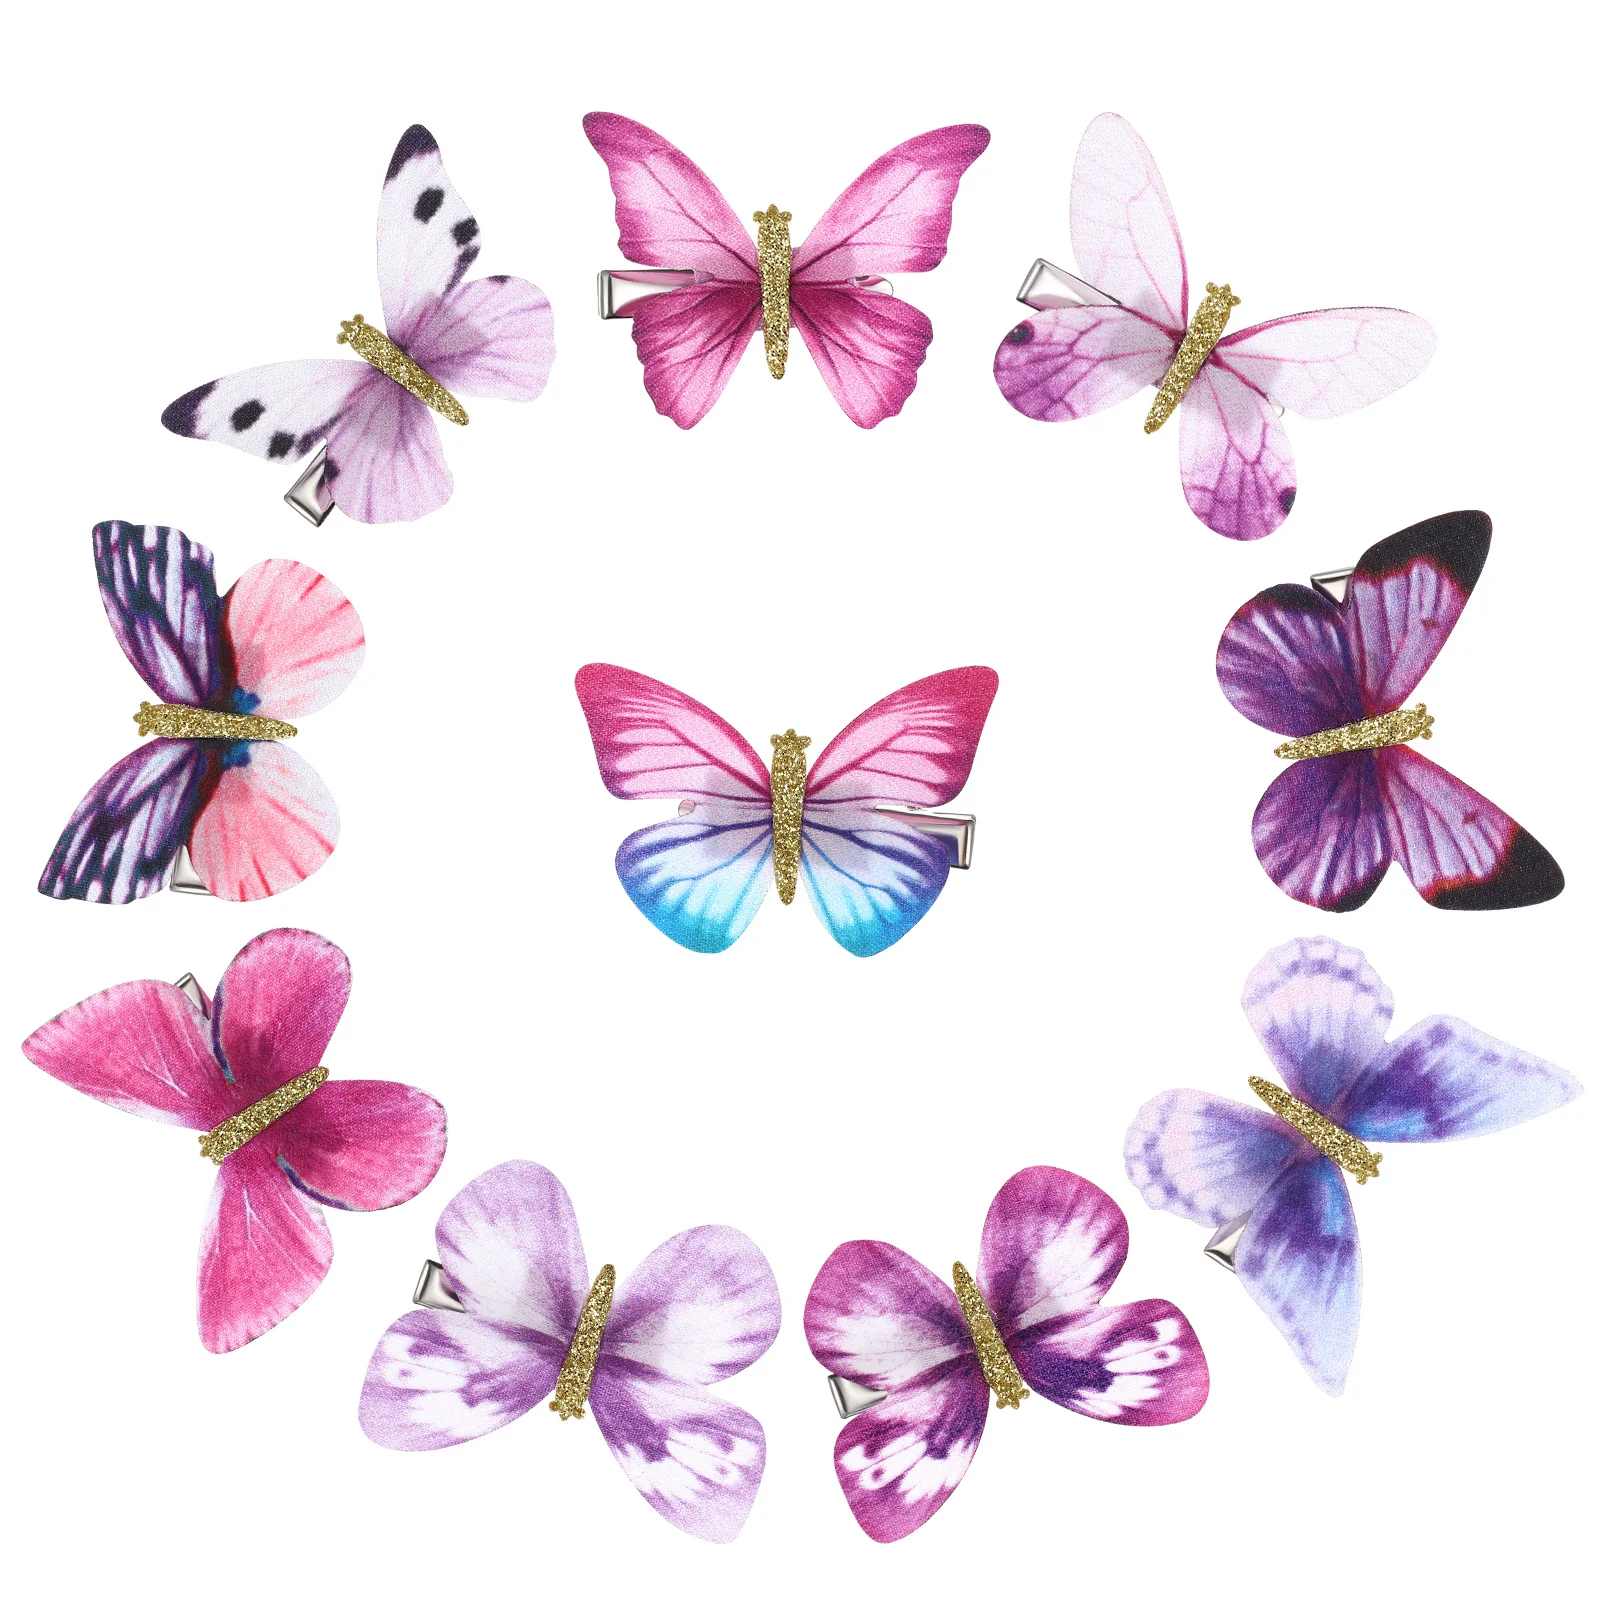 

10 шт. заколки для волос с бабочками Заколки Головные уборы Красочные заколки для женщин и девочек (фиолетовый, случайный узор)